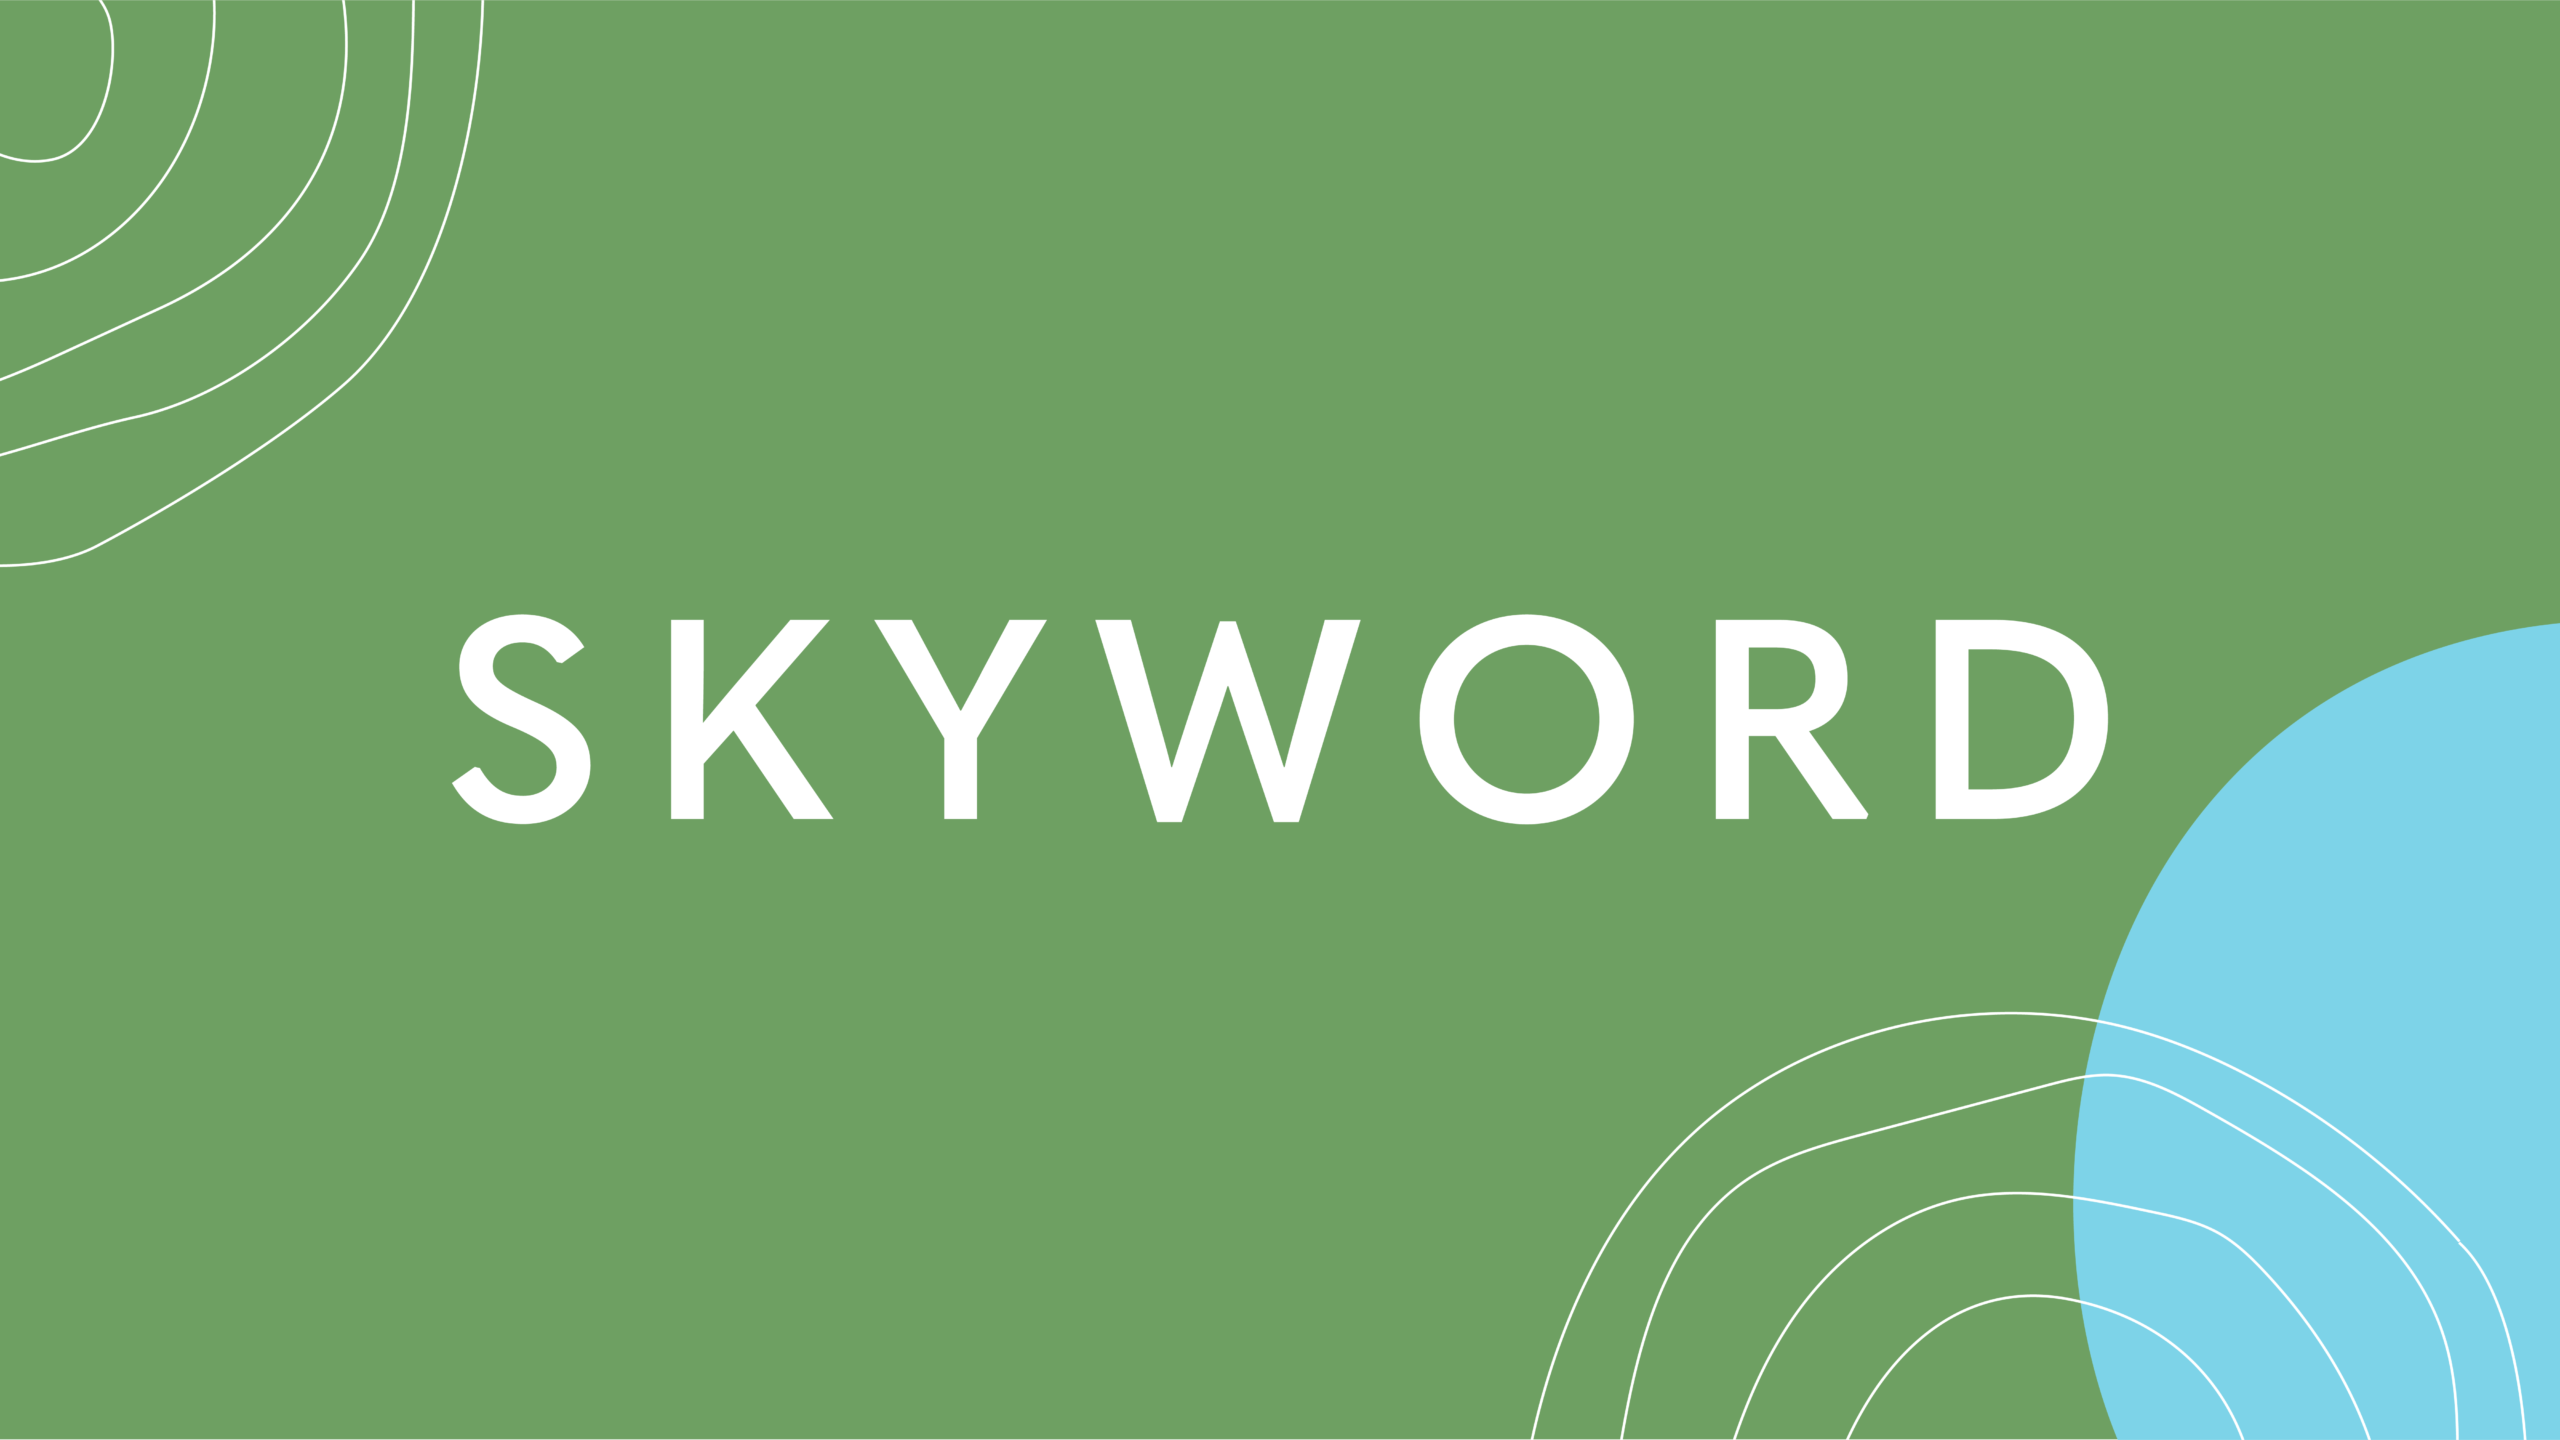 (c) Skyword.com